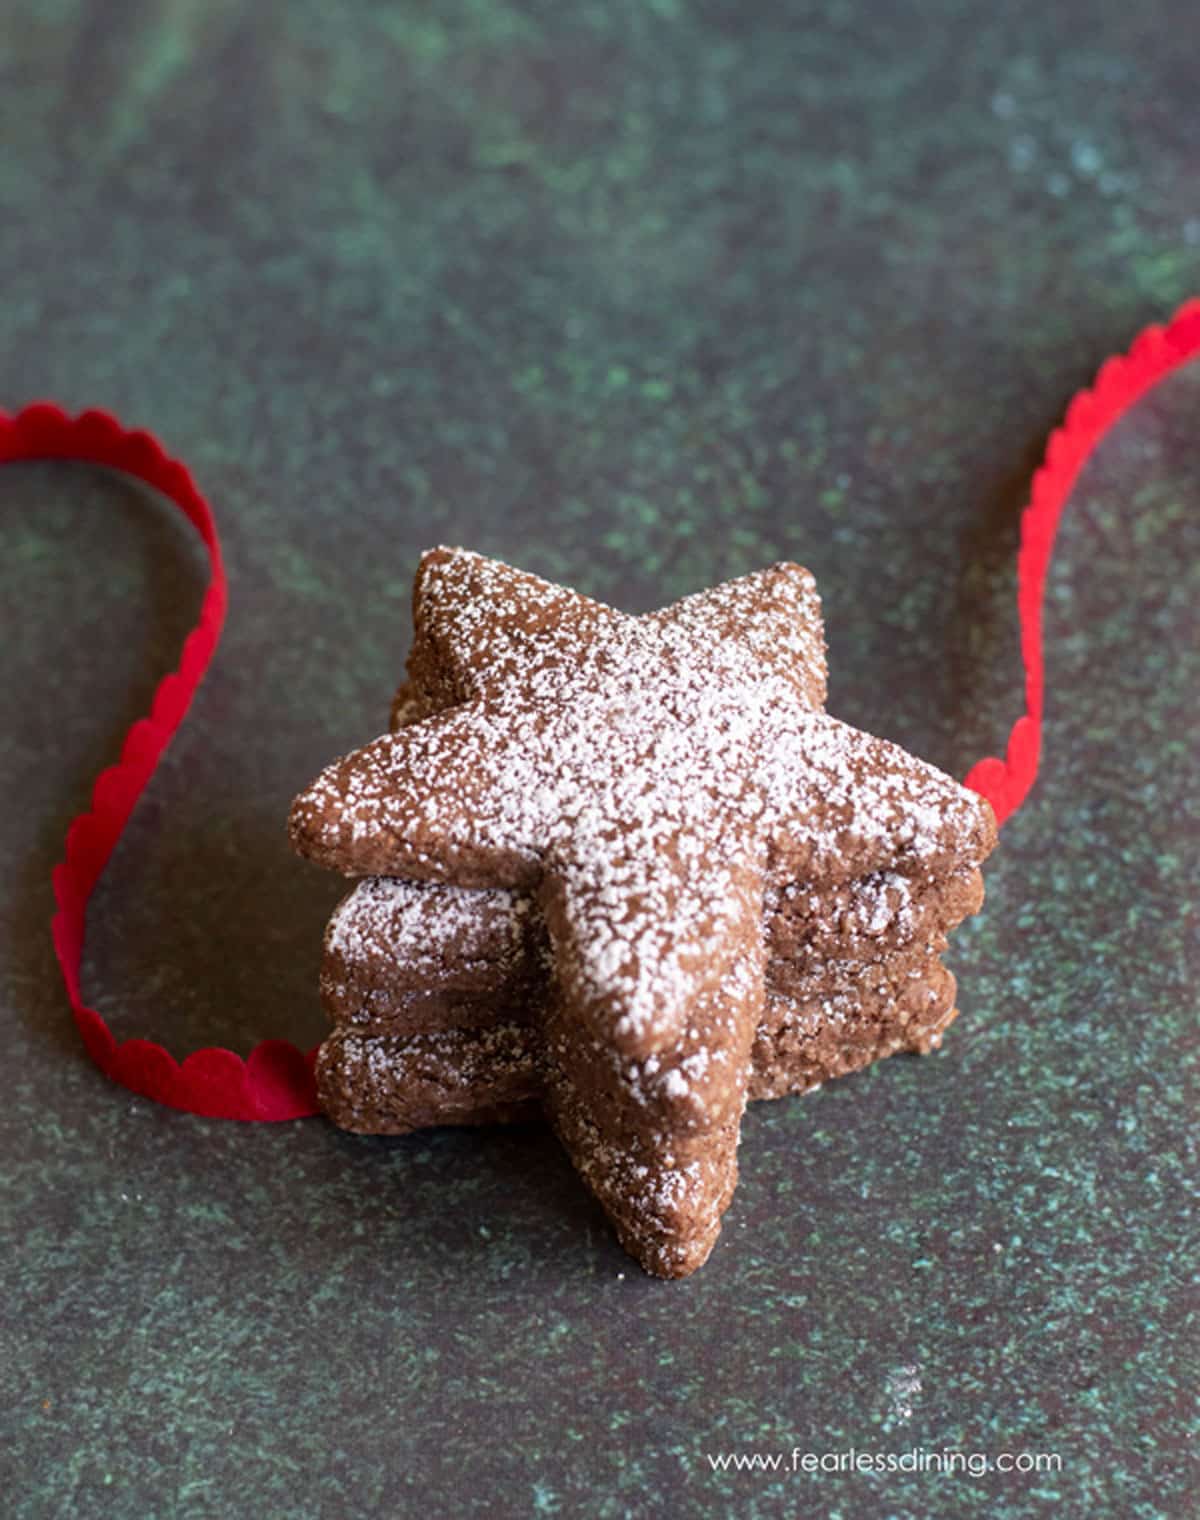 Three star shaped Swiss Brunsli Cookies with red ribbon.